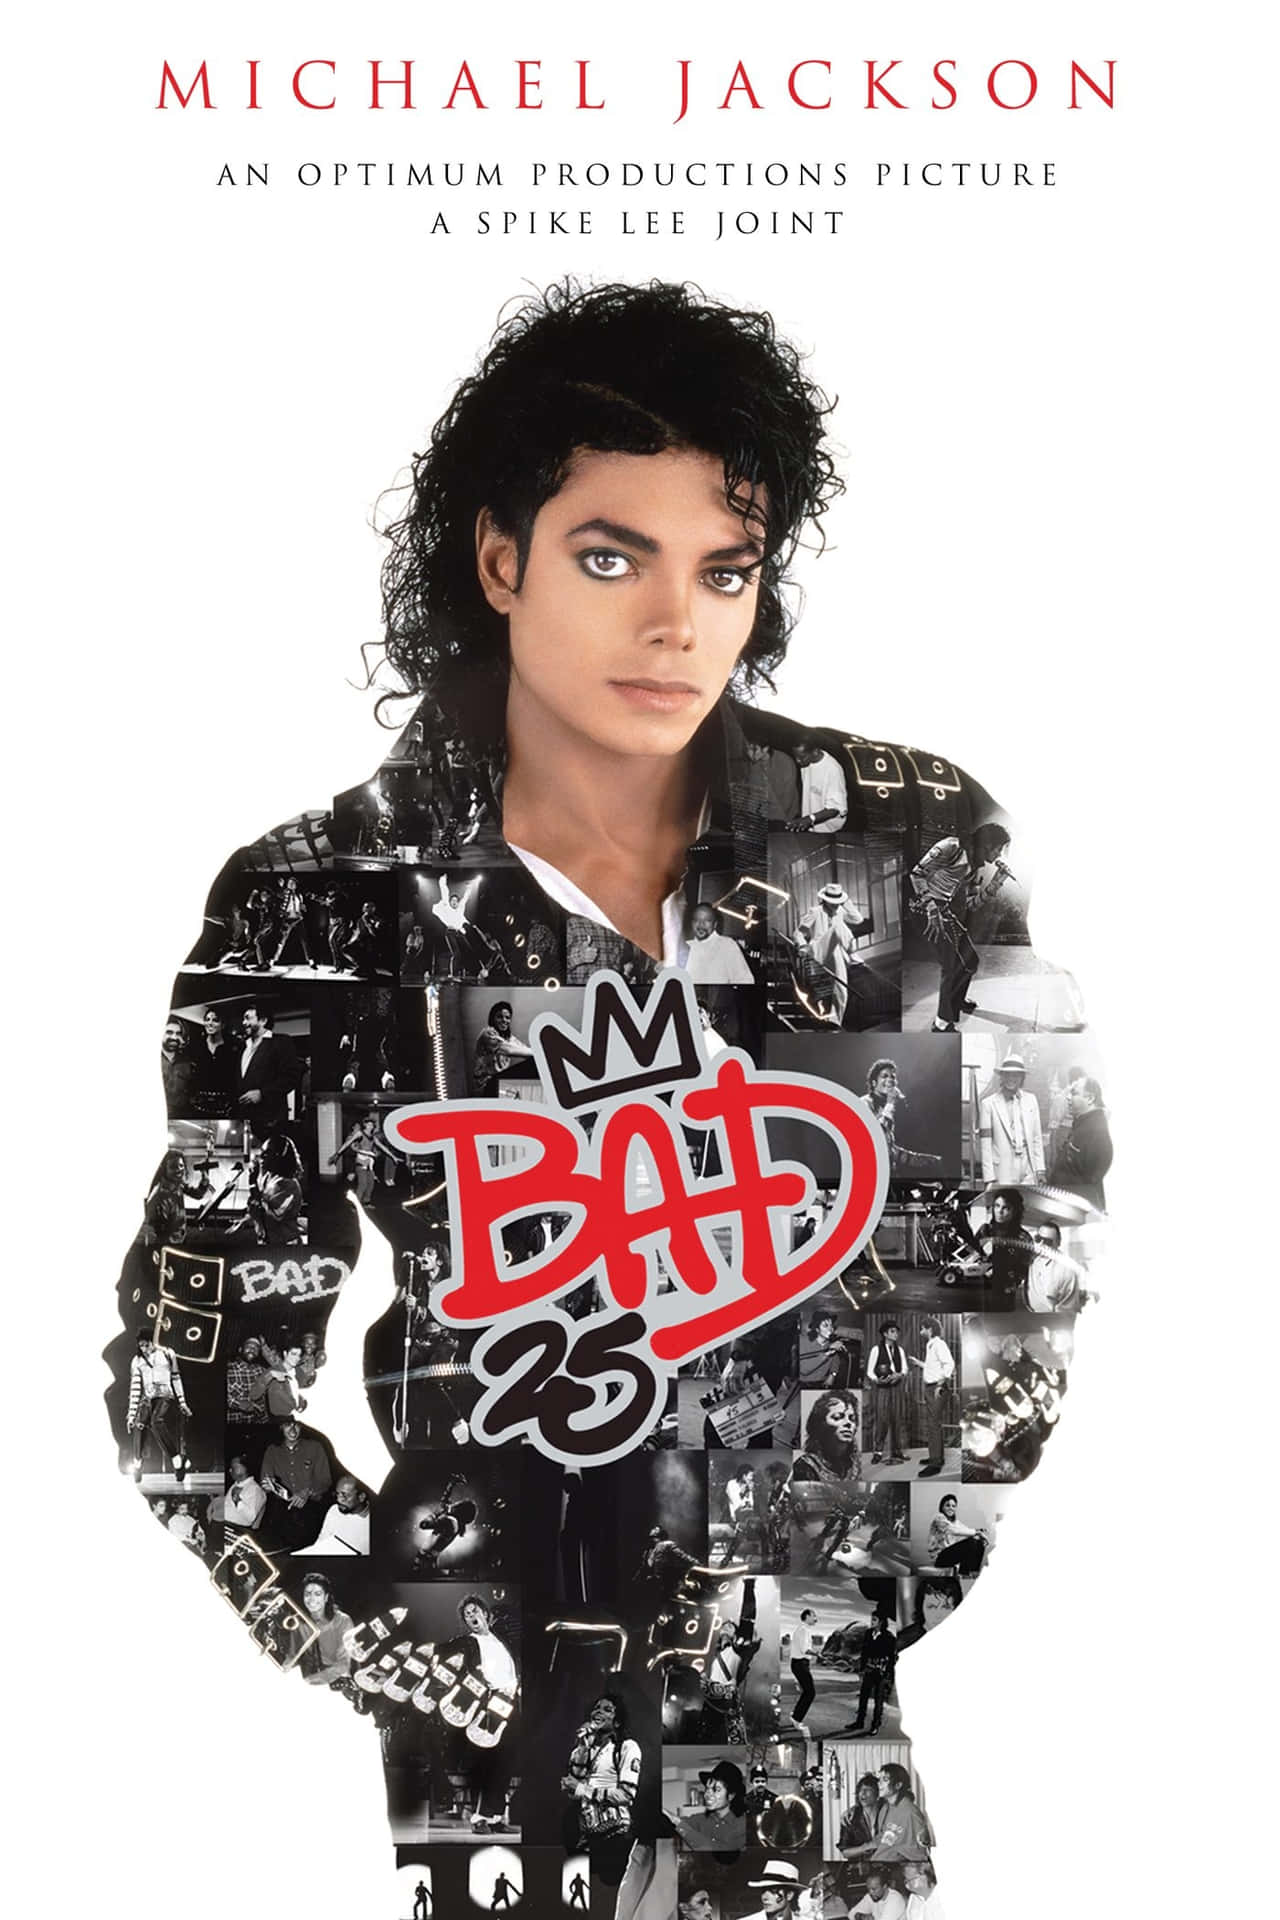 Michael Jackson 1400 X 2100 Wallpaper